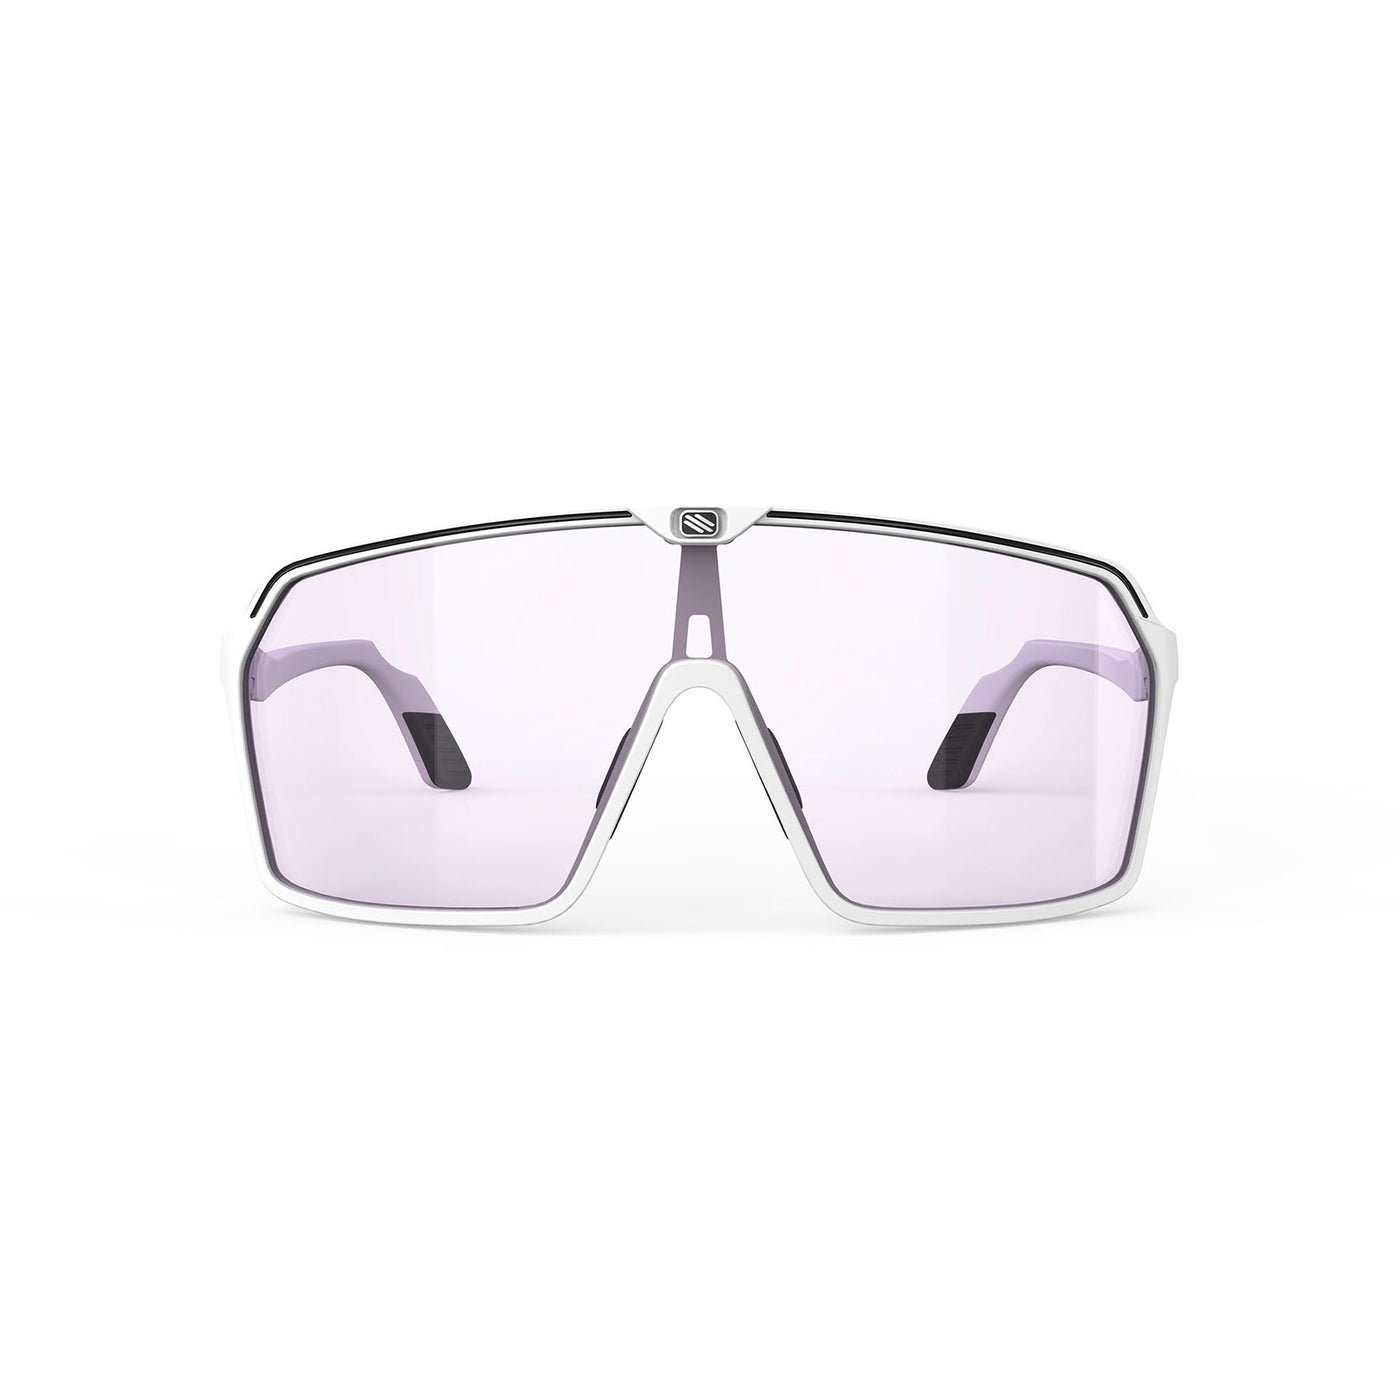 Bottega Veneta - Acetate Shield Sunglasses - White Grey - Sunglasses -  Bottega Veneta Eyewear - Avvenice